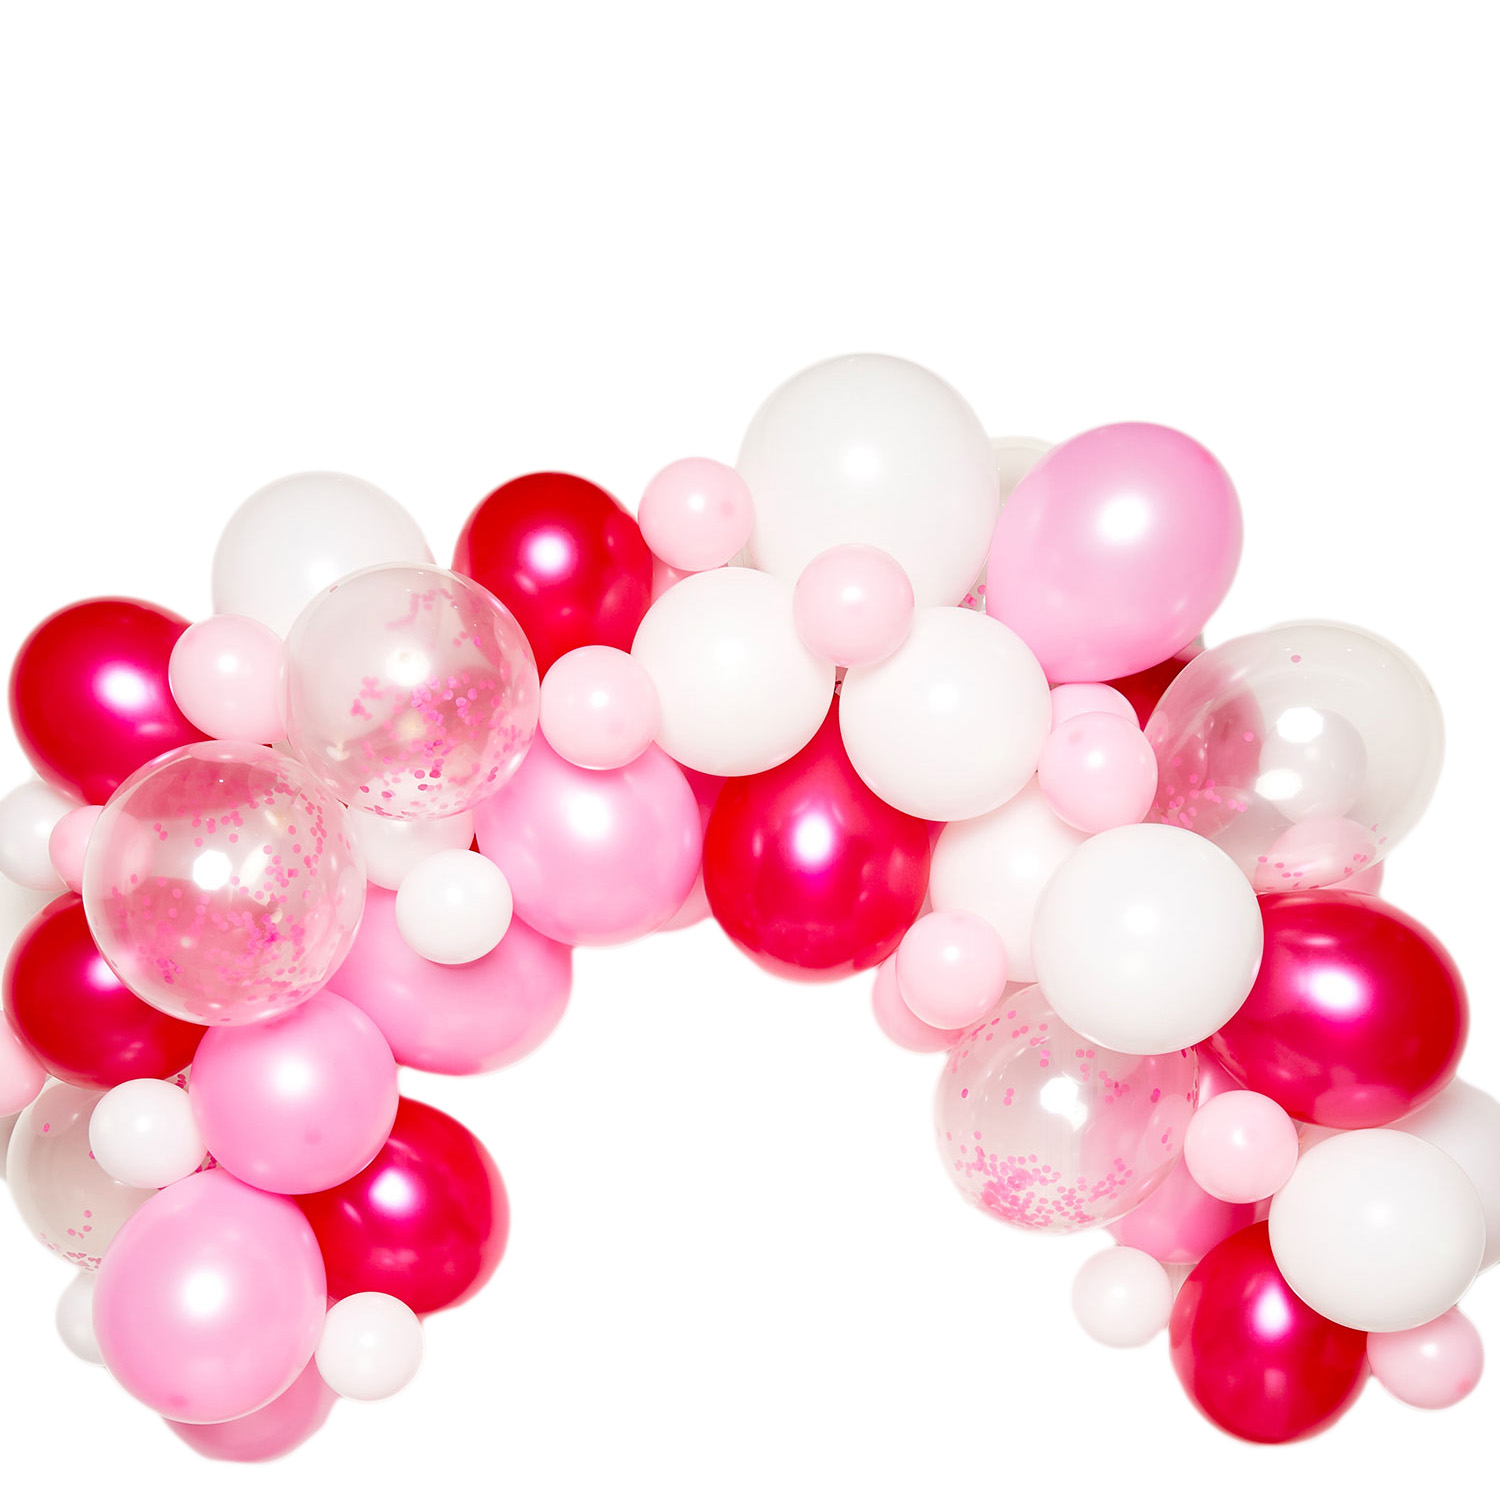 DIY Balloon Garland Kit - Pink